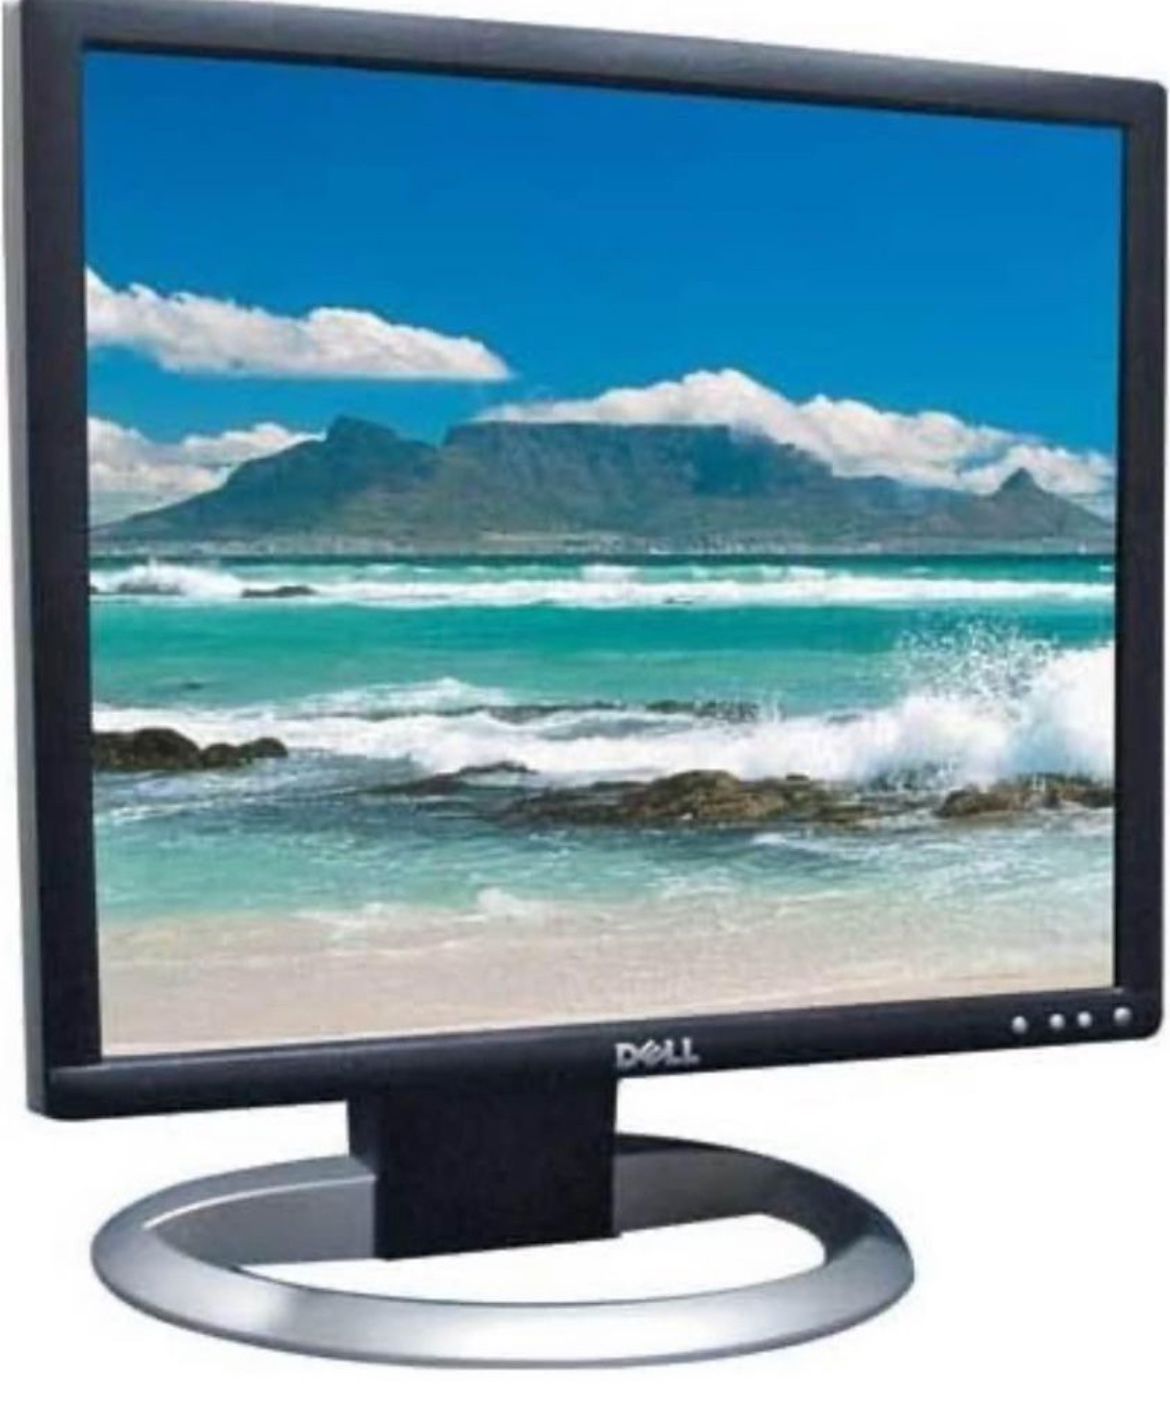 Dell UltraSharp 1905FP 19" Monitor